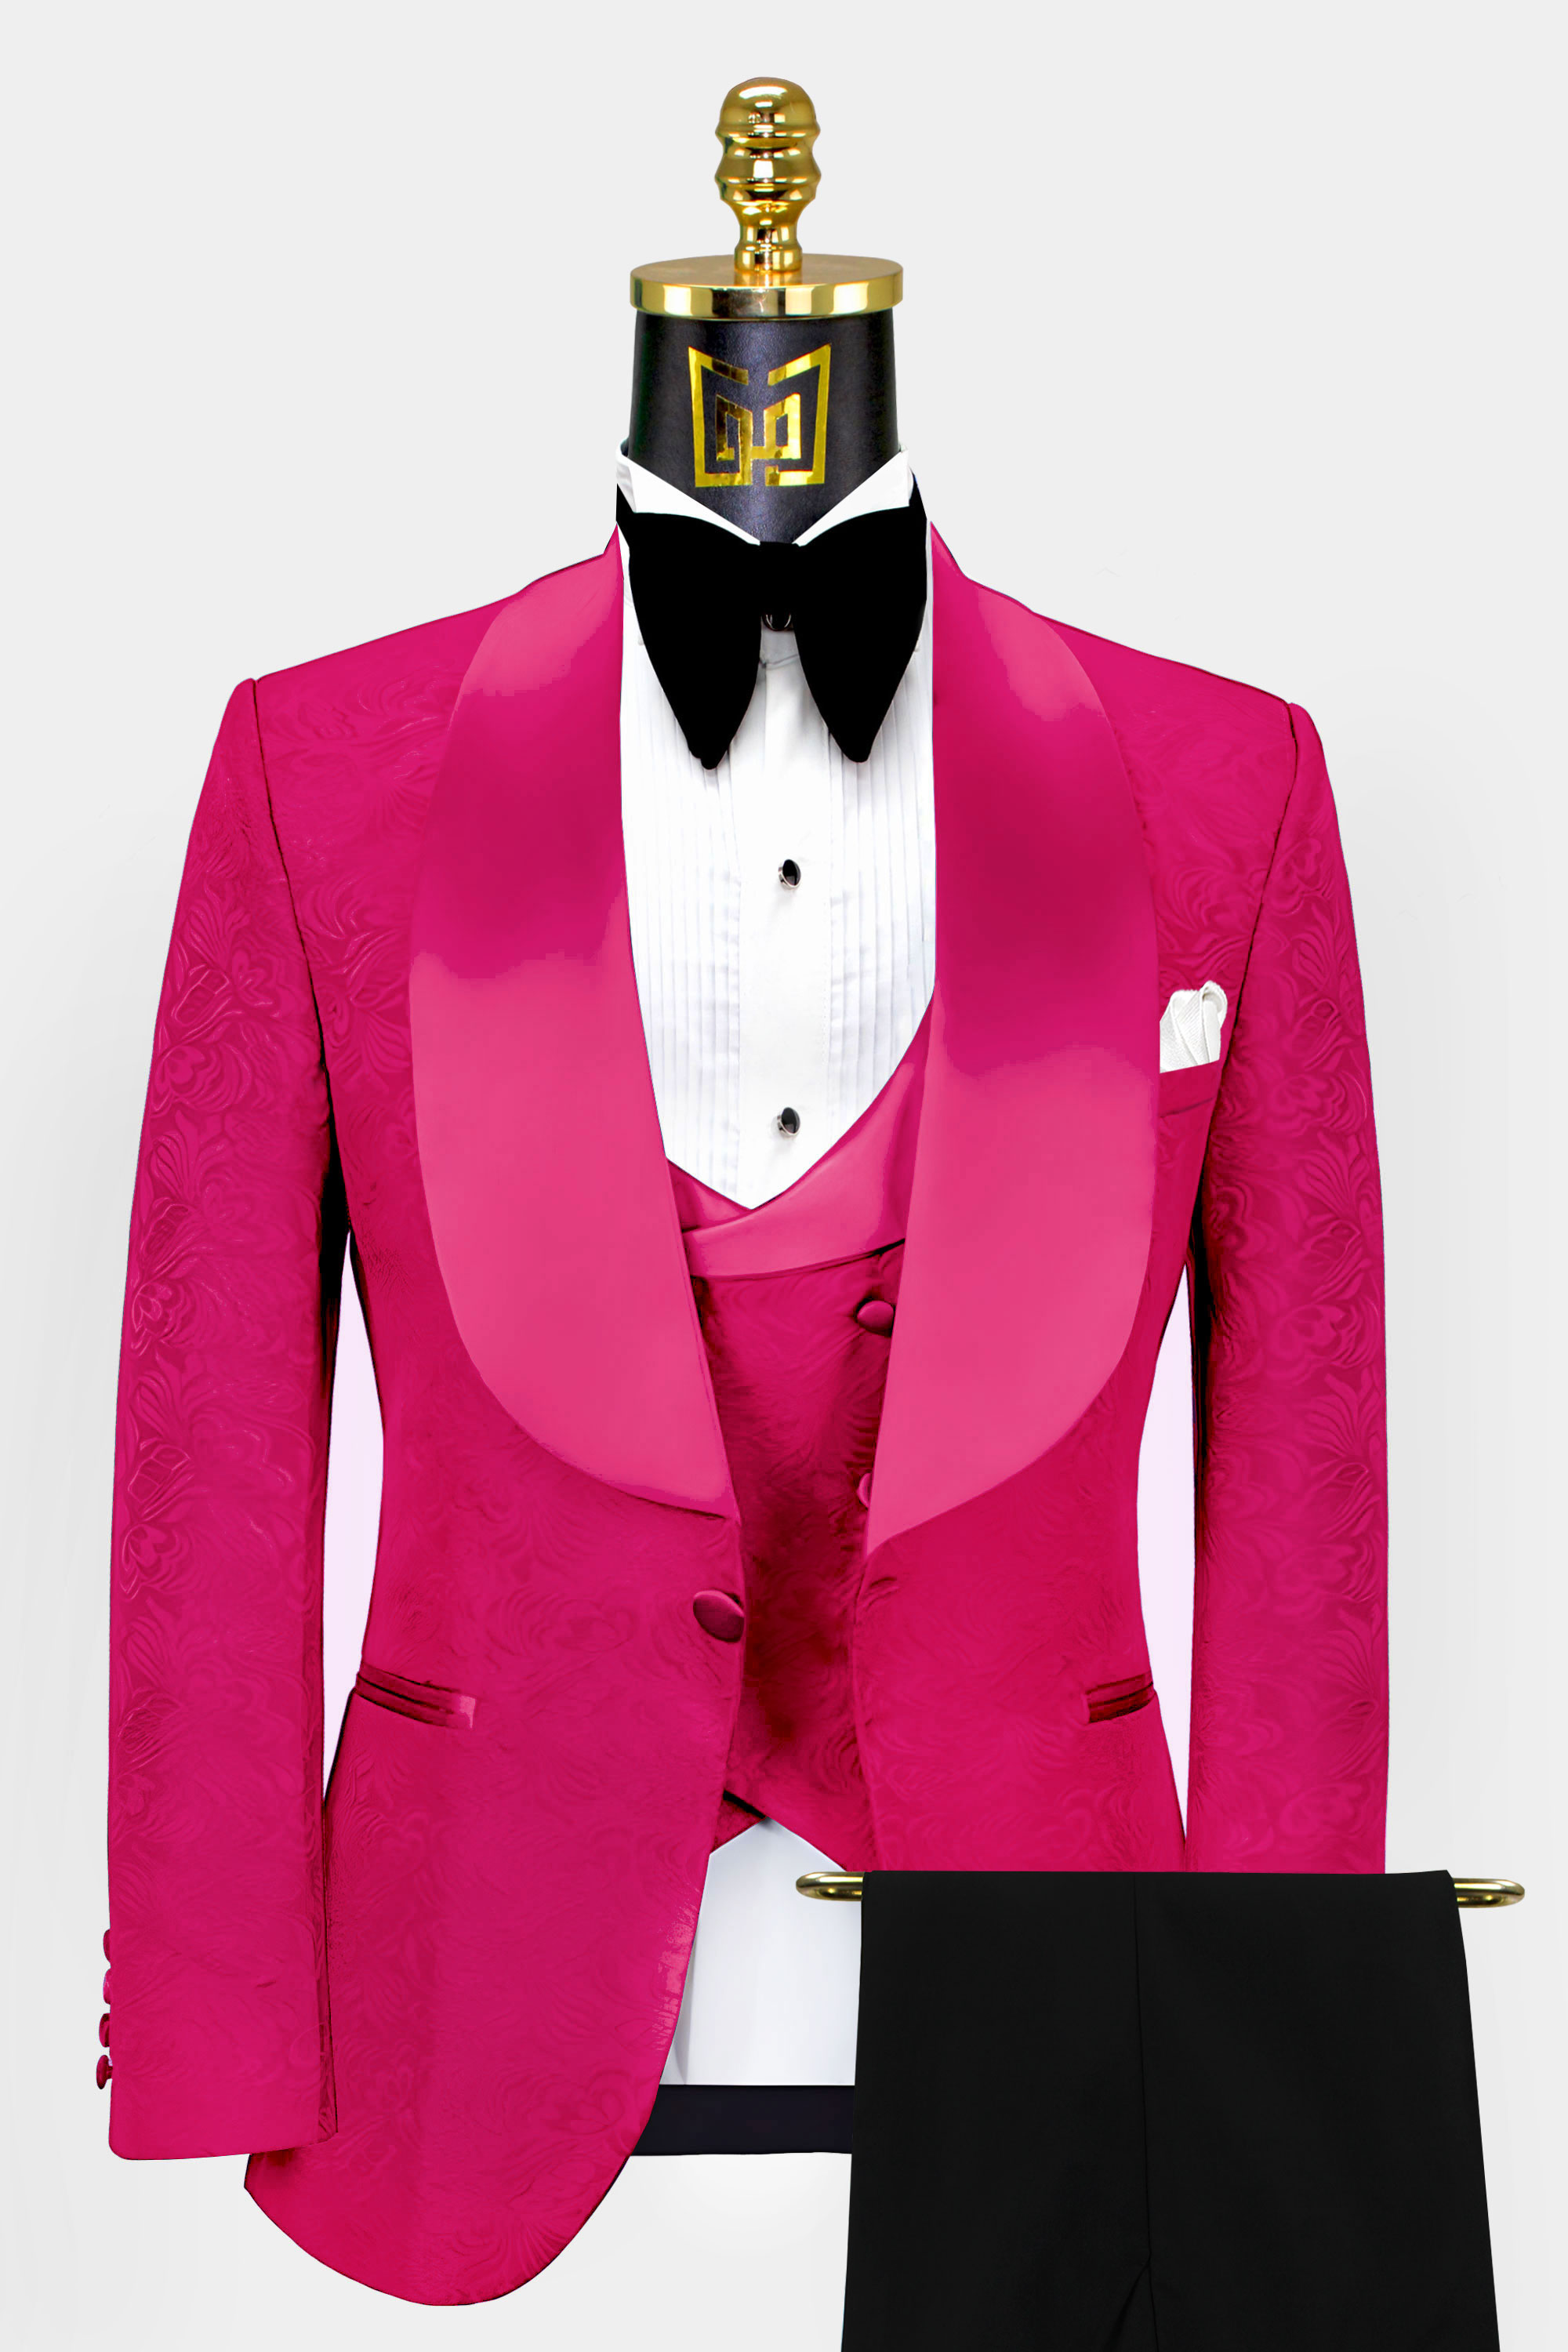 Pink-and-Black-Tuxedo-Wedding-Groom-Suit-from-Gentlemansguru.com